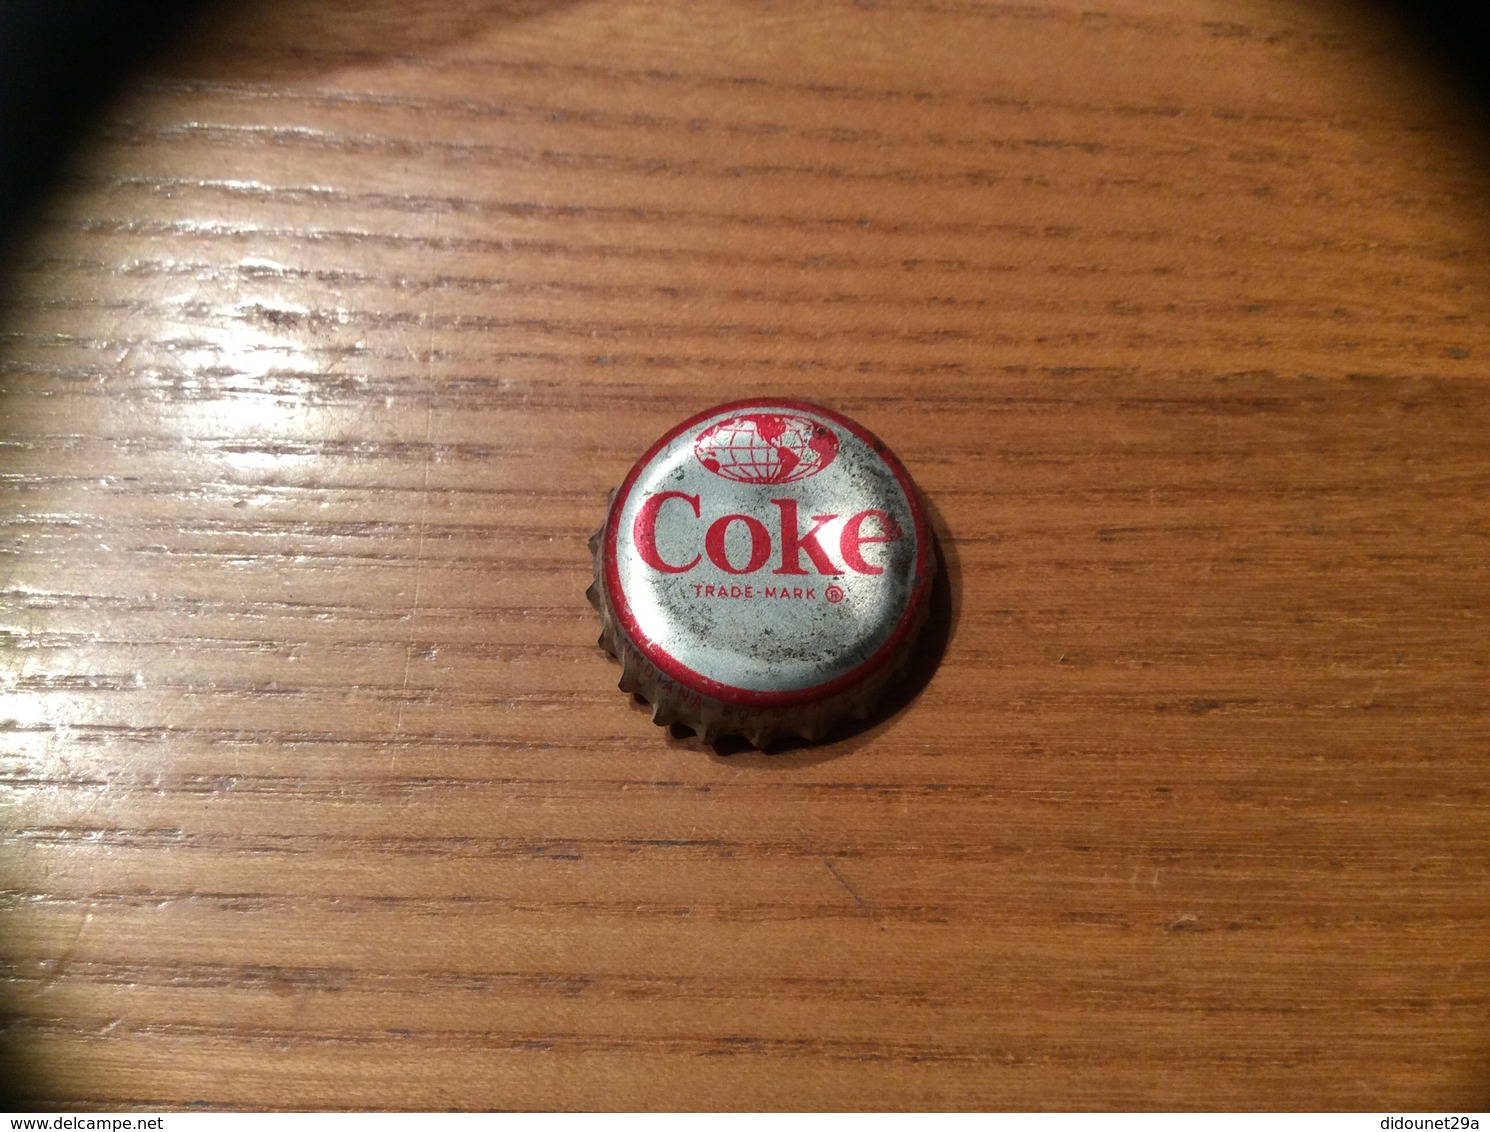 Ancienne Capsule "Coke N°8 - BAHAMAS - FLAMINGO"Etats-Unis (USA) Coca-Cola, Série Pays (Liège Enlevé) - Soda